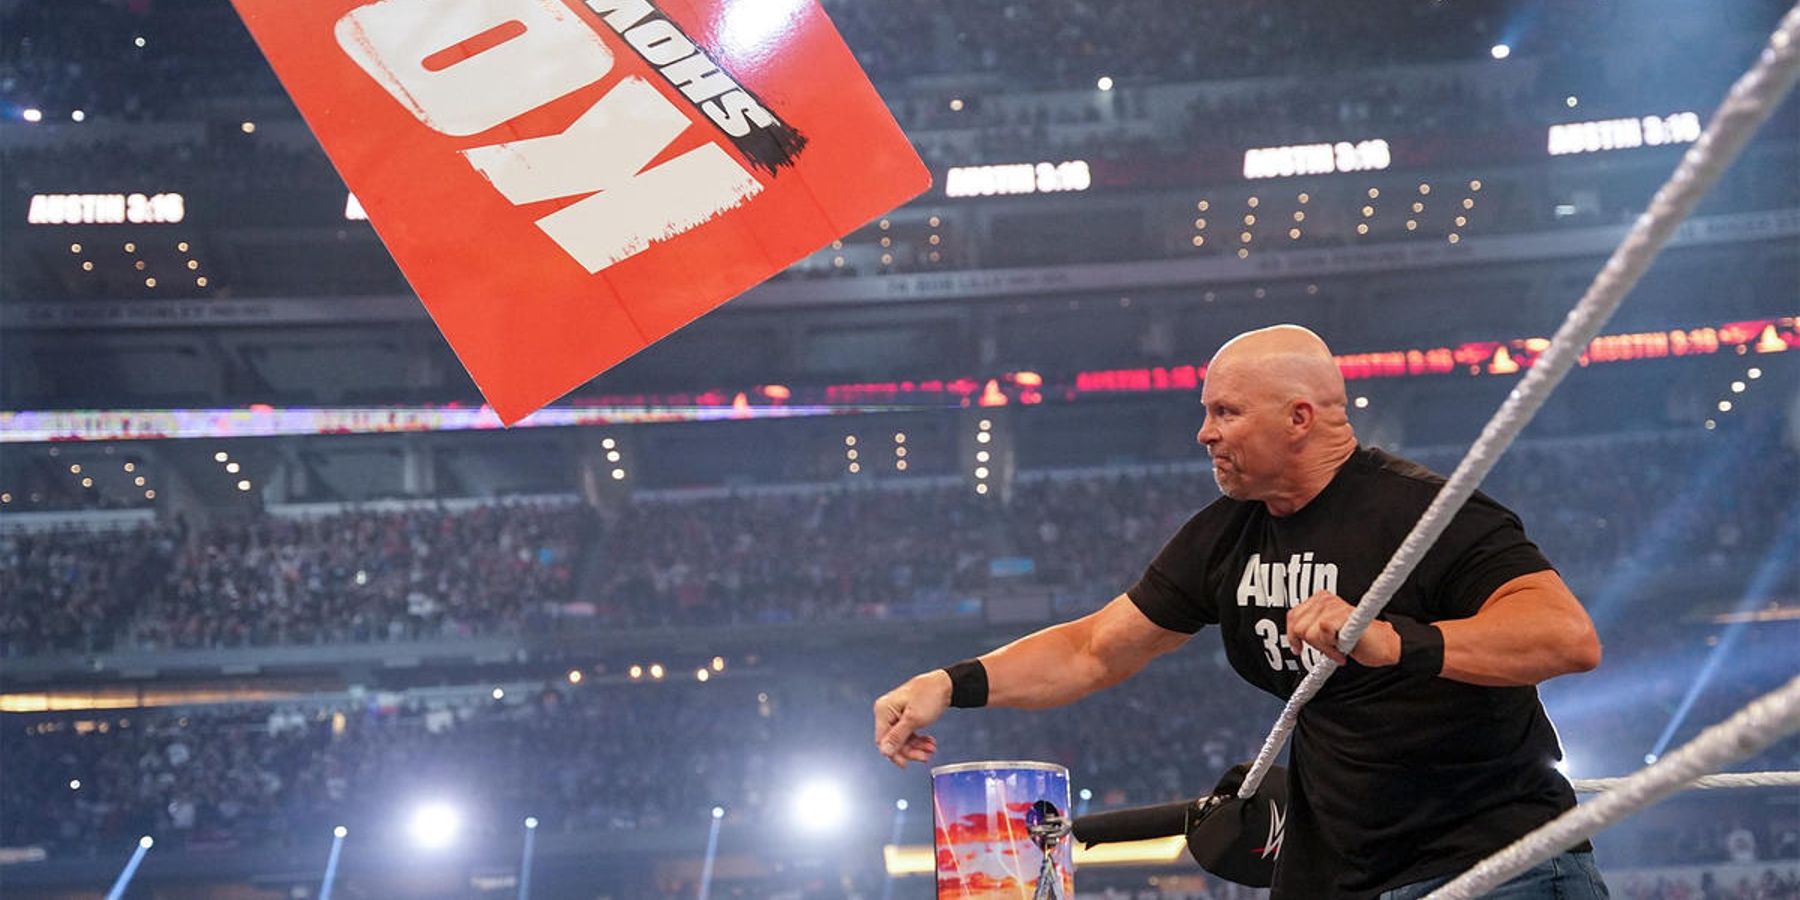 Stone Cold lance l'une des pancartes de Kevin Owens hors du ring avant leur match à WrestleMania 38.